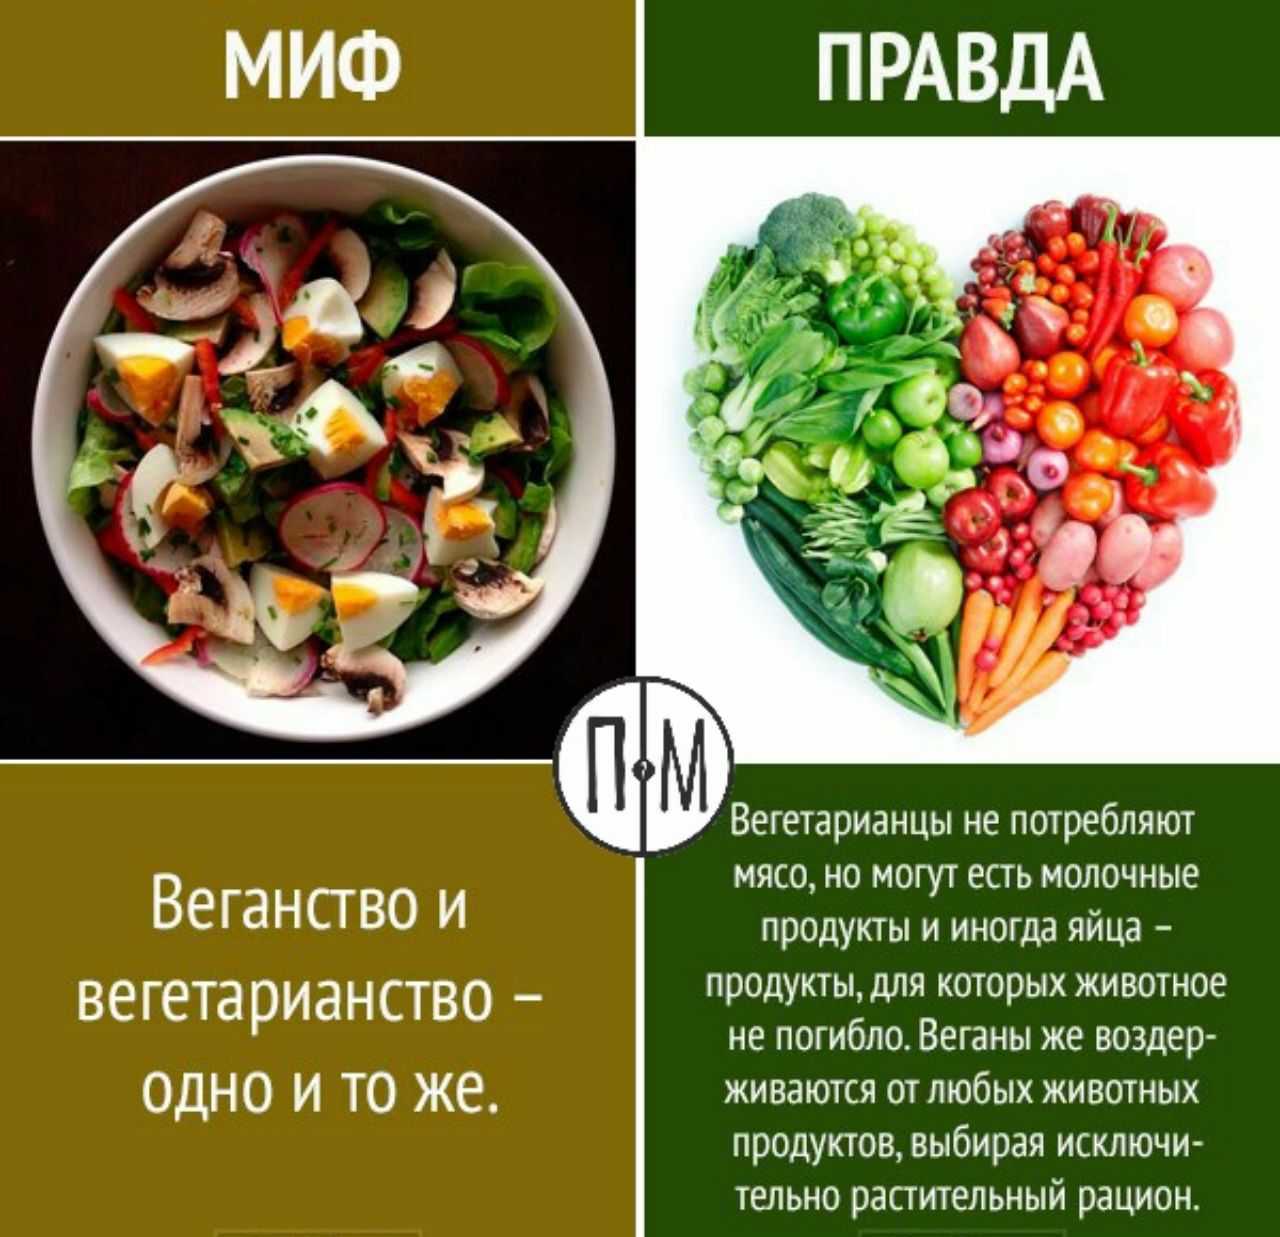 Вегетарианец и веган: отличия в питании и образе жизни, таблица